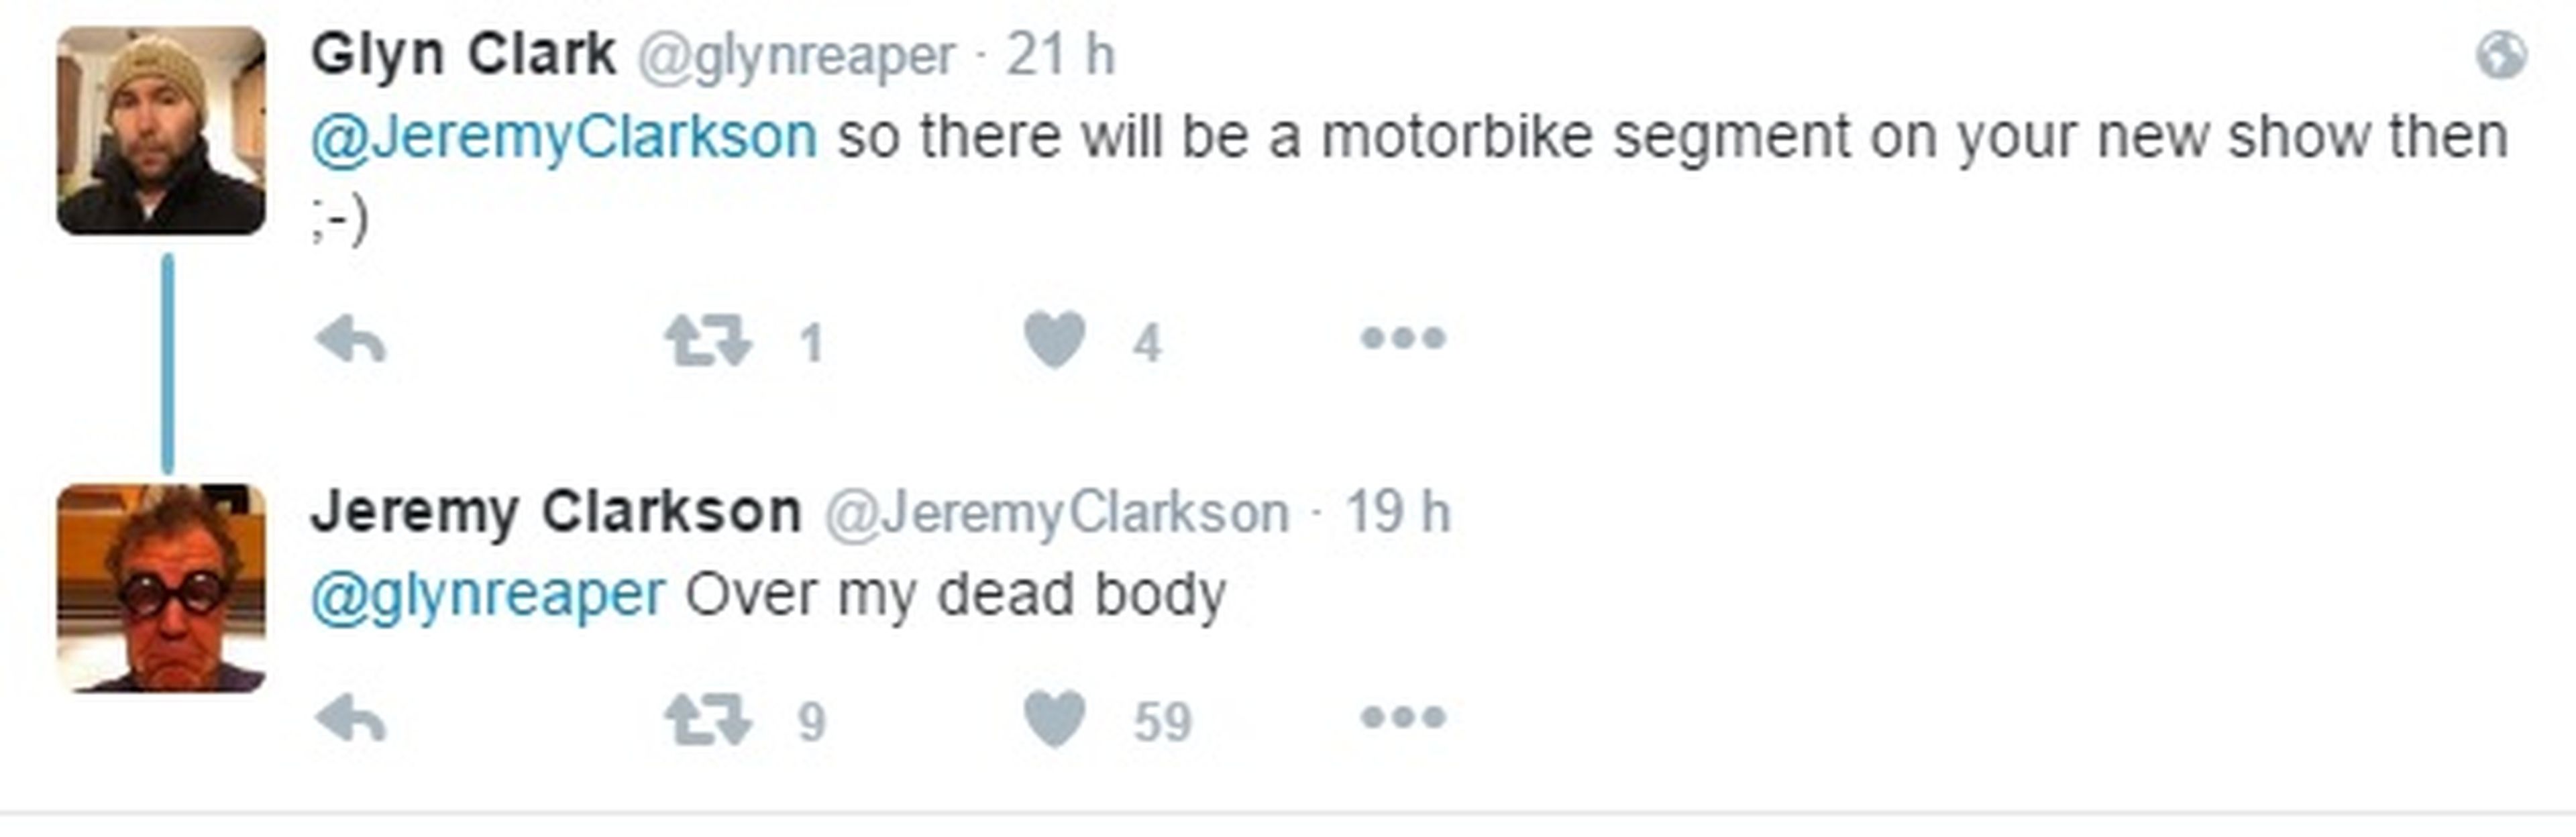 Respuesta Clarkson Twitter